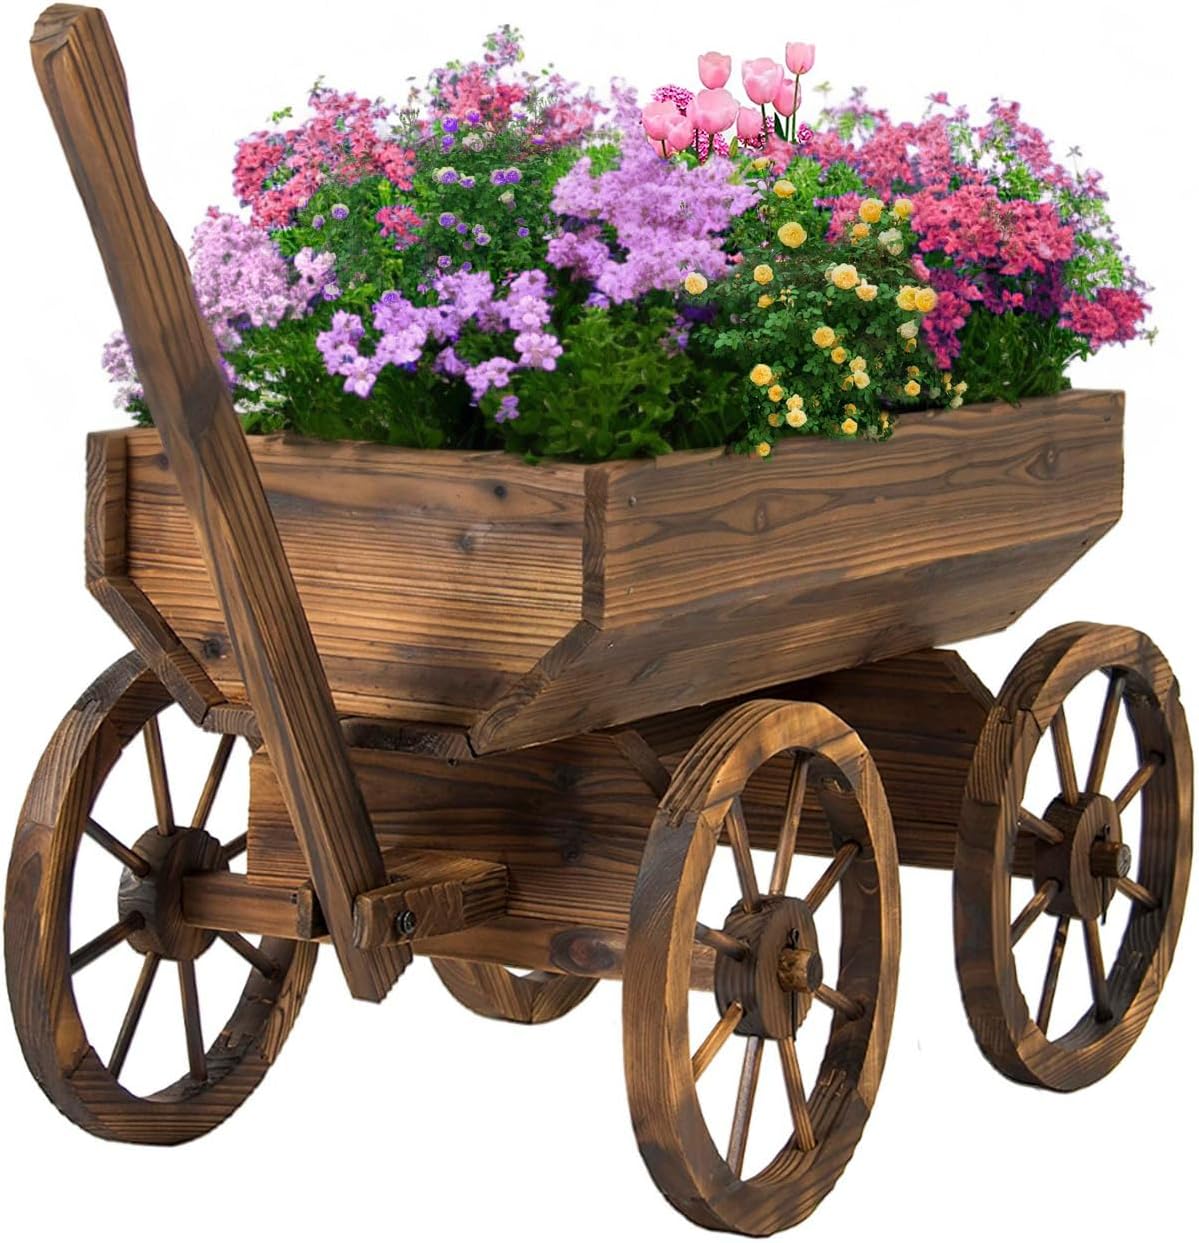 wooden wheelbarrow - a unique planter box